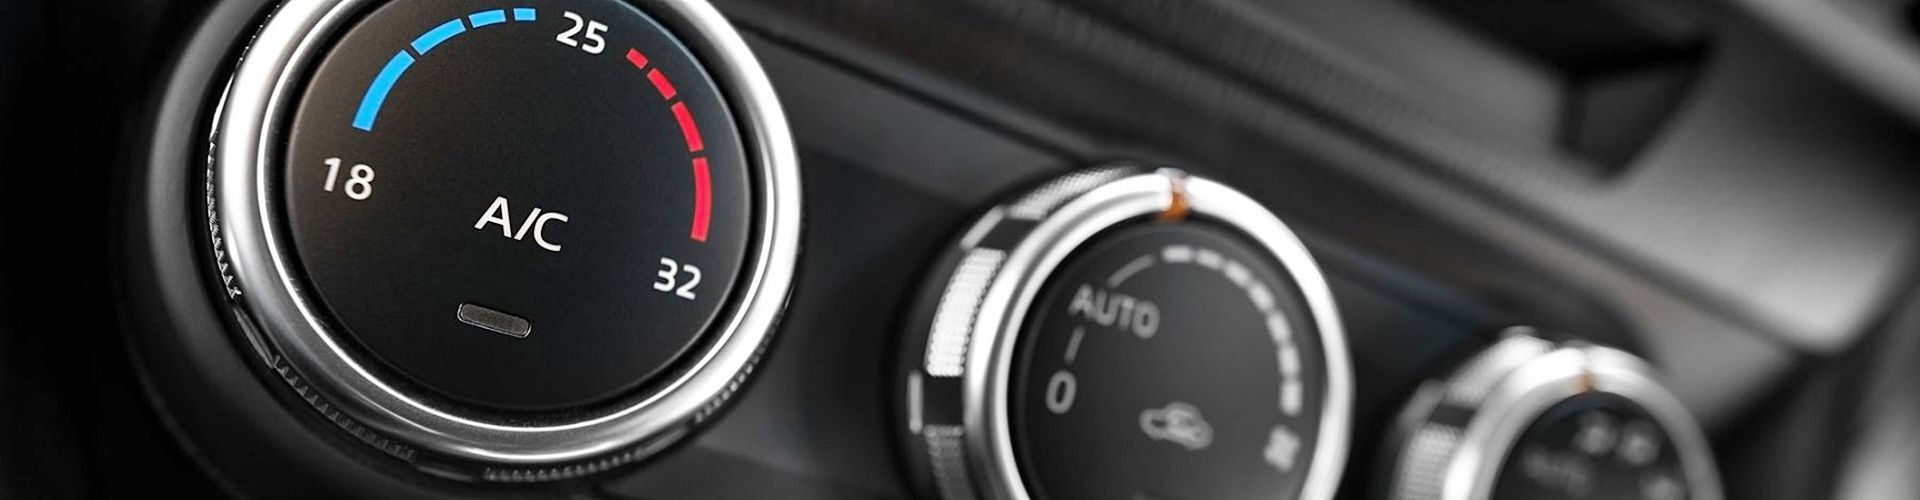 papelería refrigerador Persona enferma Dónde colocar el sensor de temperatura exterior del coche? | Total Renting